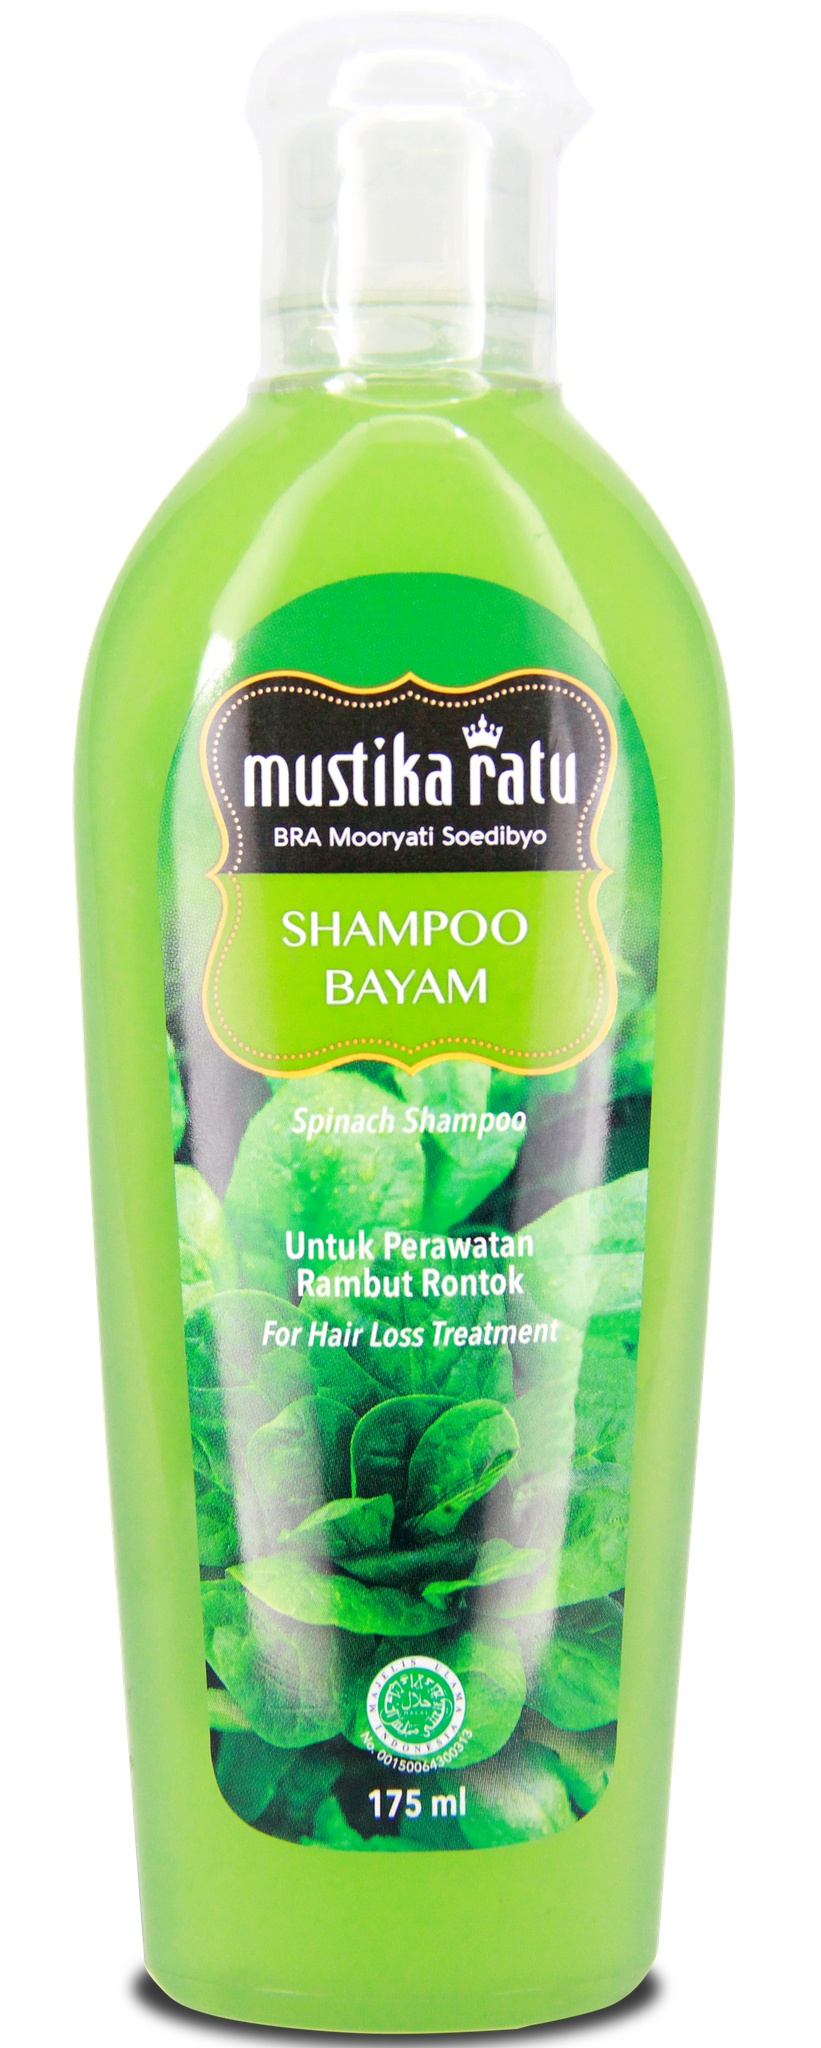 Mustika Ratu Shampoo Bayam